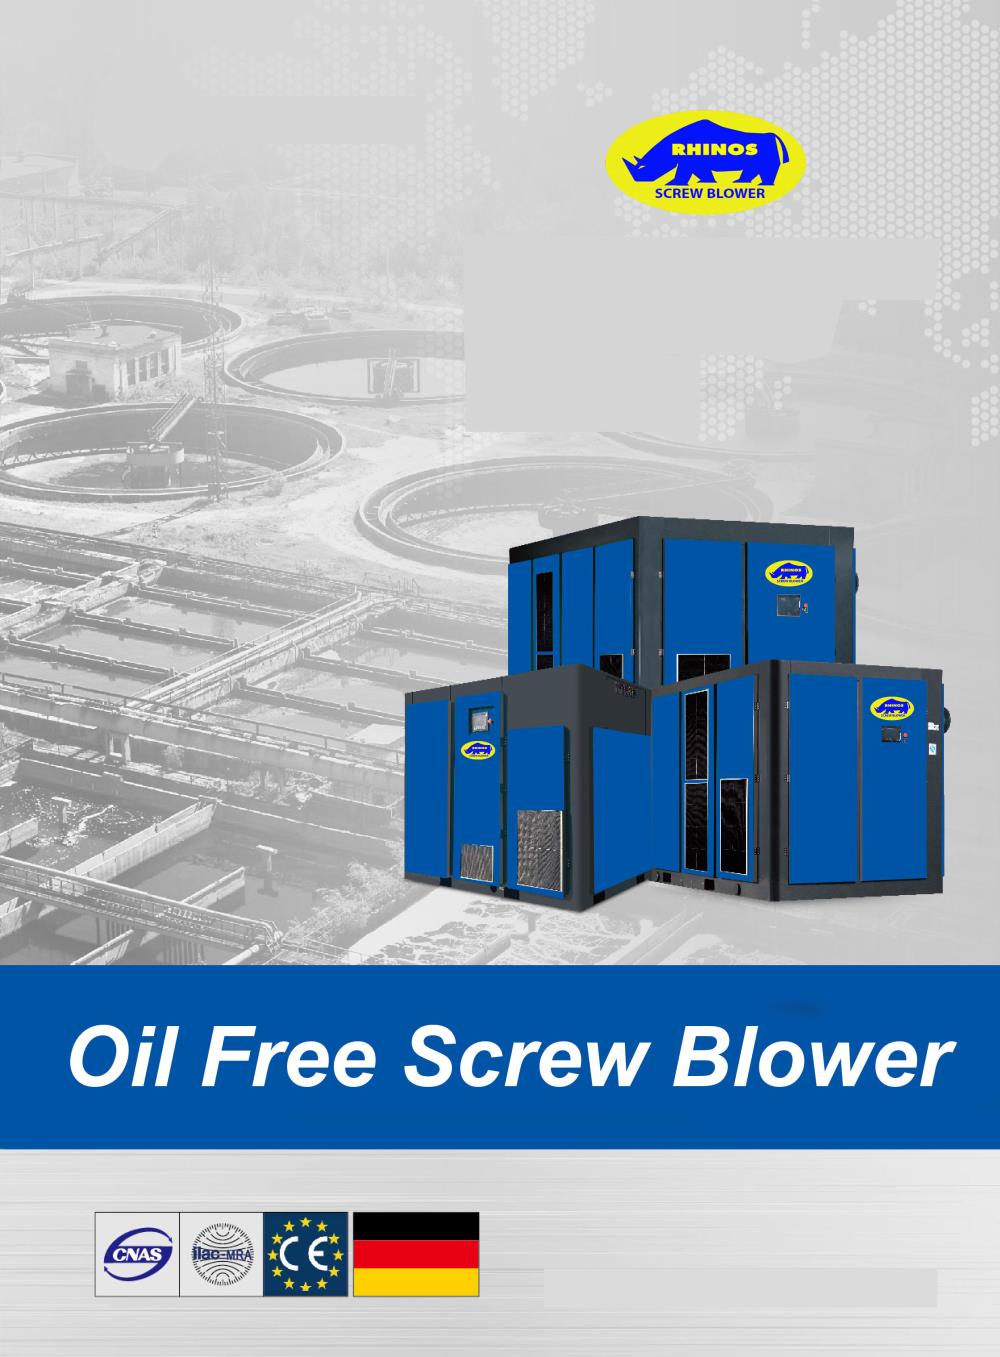 Rhinos Oil Free Screw Blower,Screw Blower,Rhinos,Machinery and Process Equipment/Blowers